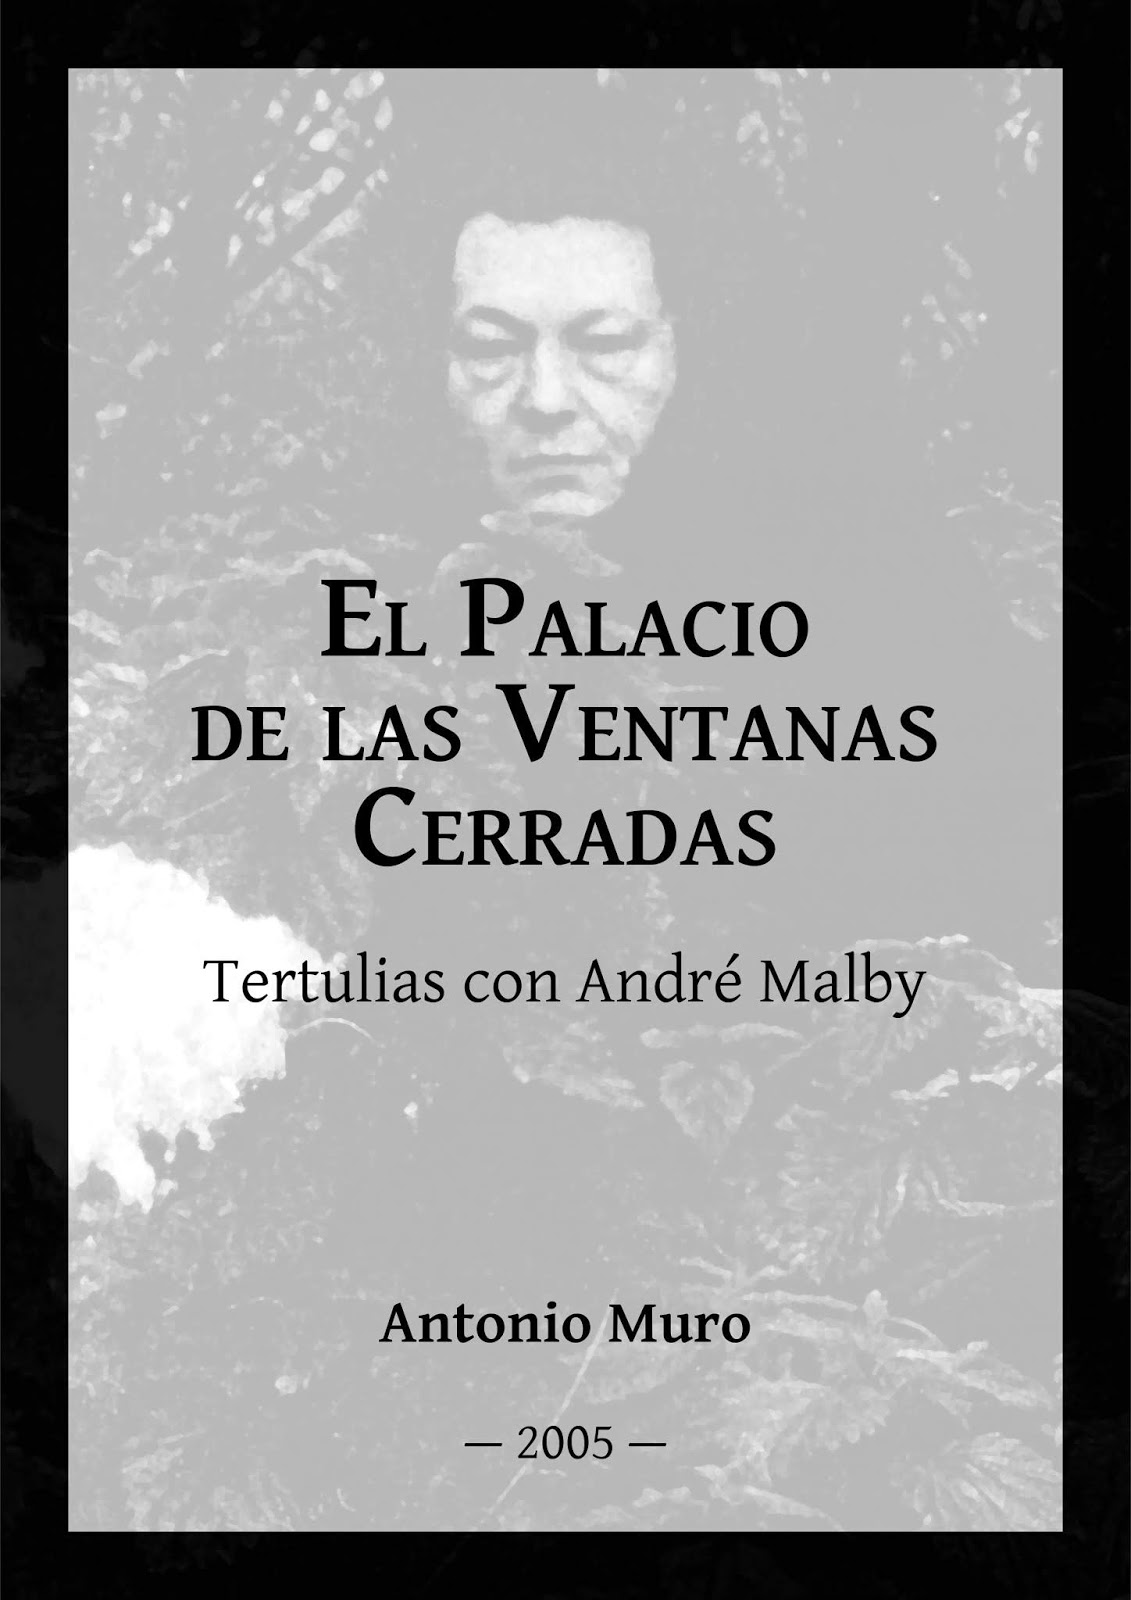 El Palacio de las Ventanas Cerradas: Tertulias con André Malby